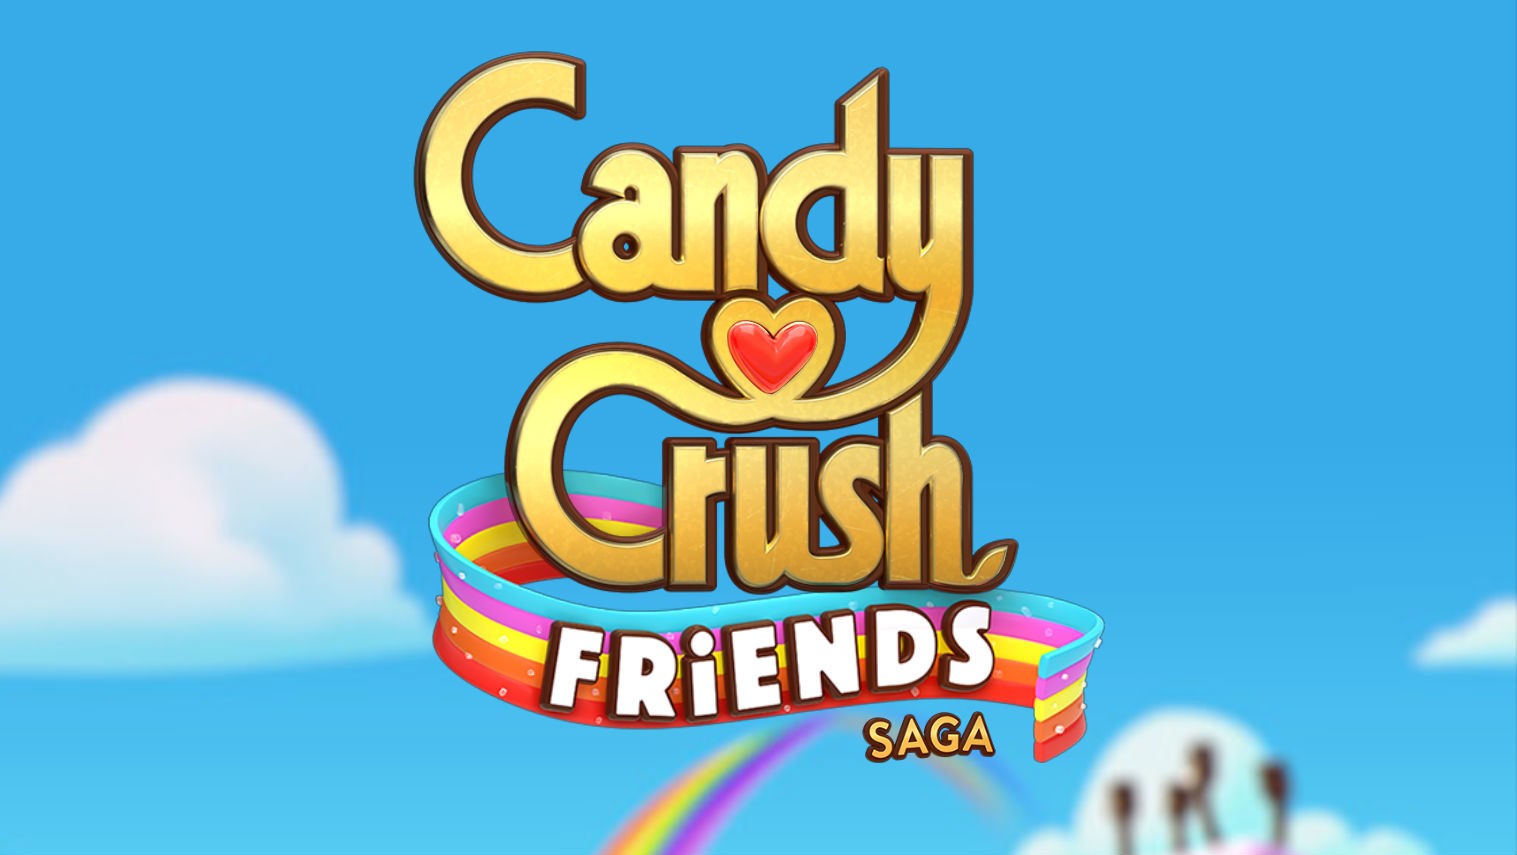 Candy Crush Friends Saga video